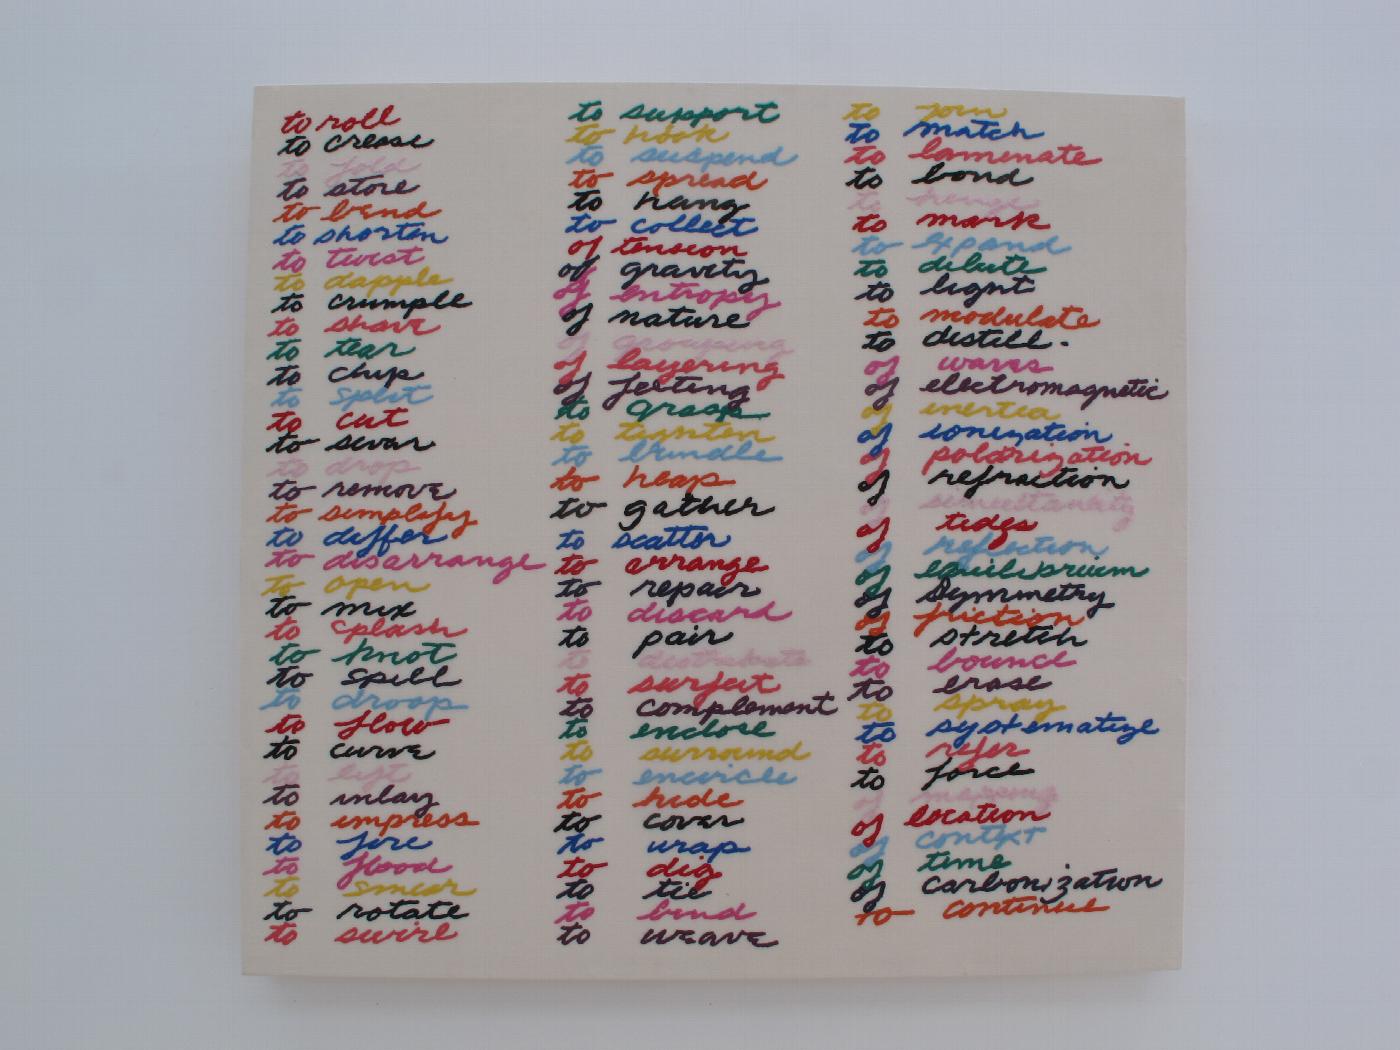 Escultura de Carmen Marcos, un bordado sobre algodón montado en bastidor de madera (2010-2012), que reproduce el listado de verbos de acción relacionados con la escultura manuscrito por Richard Serra en 1968